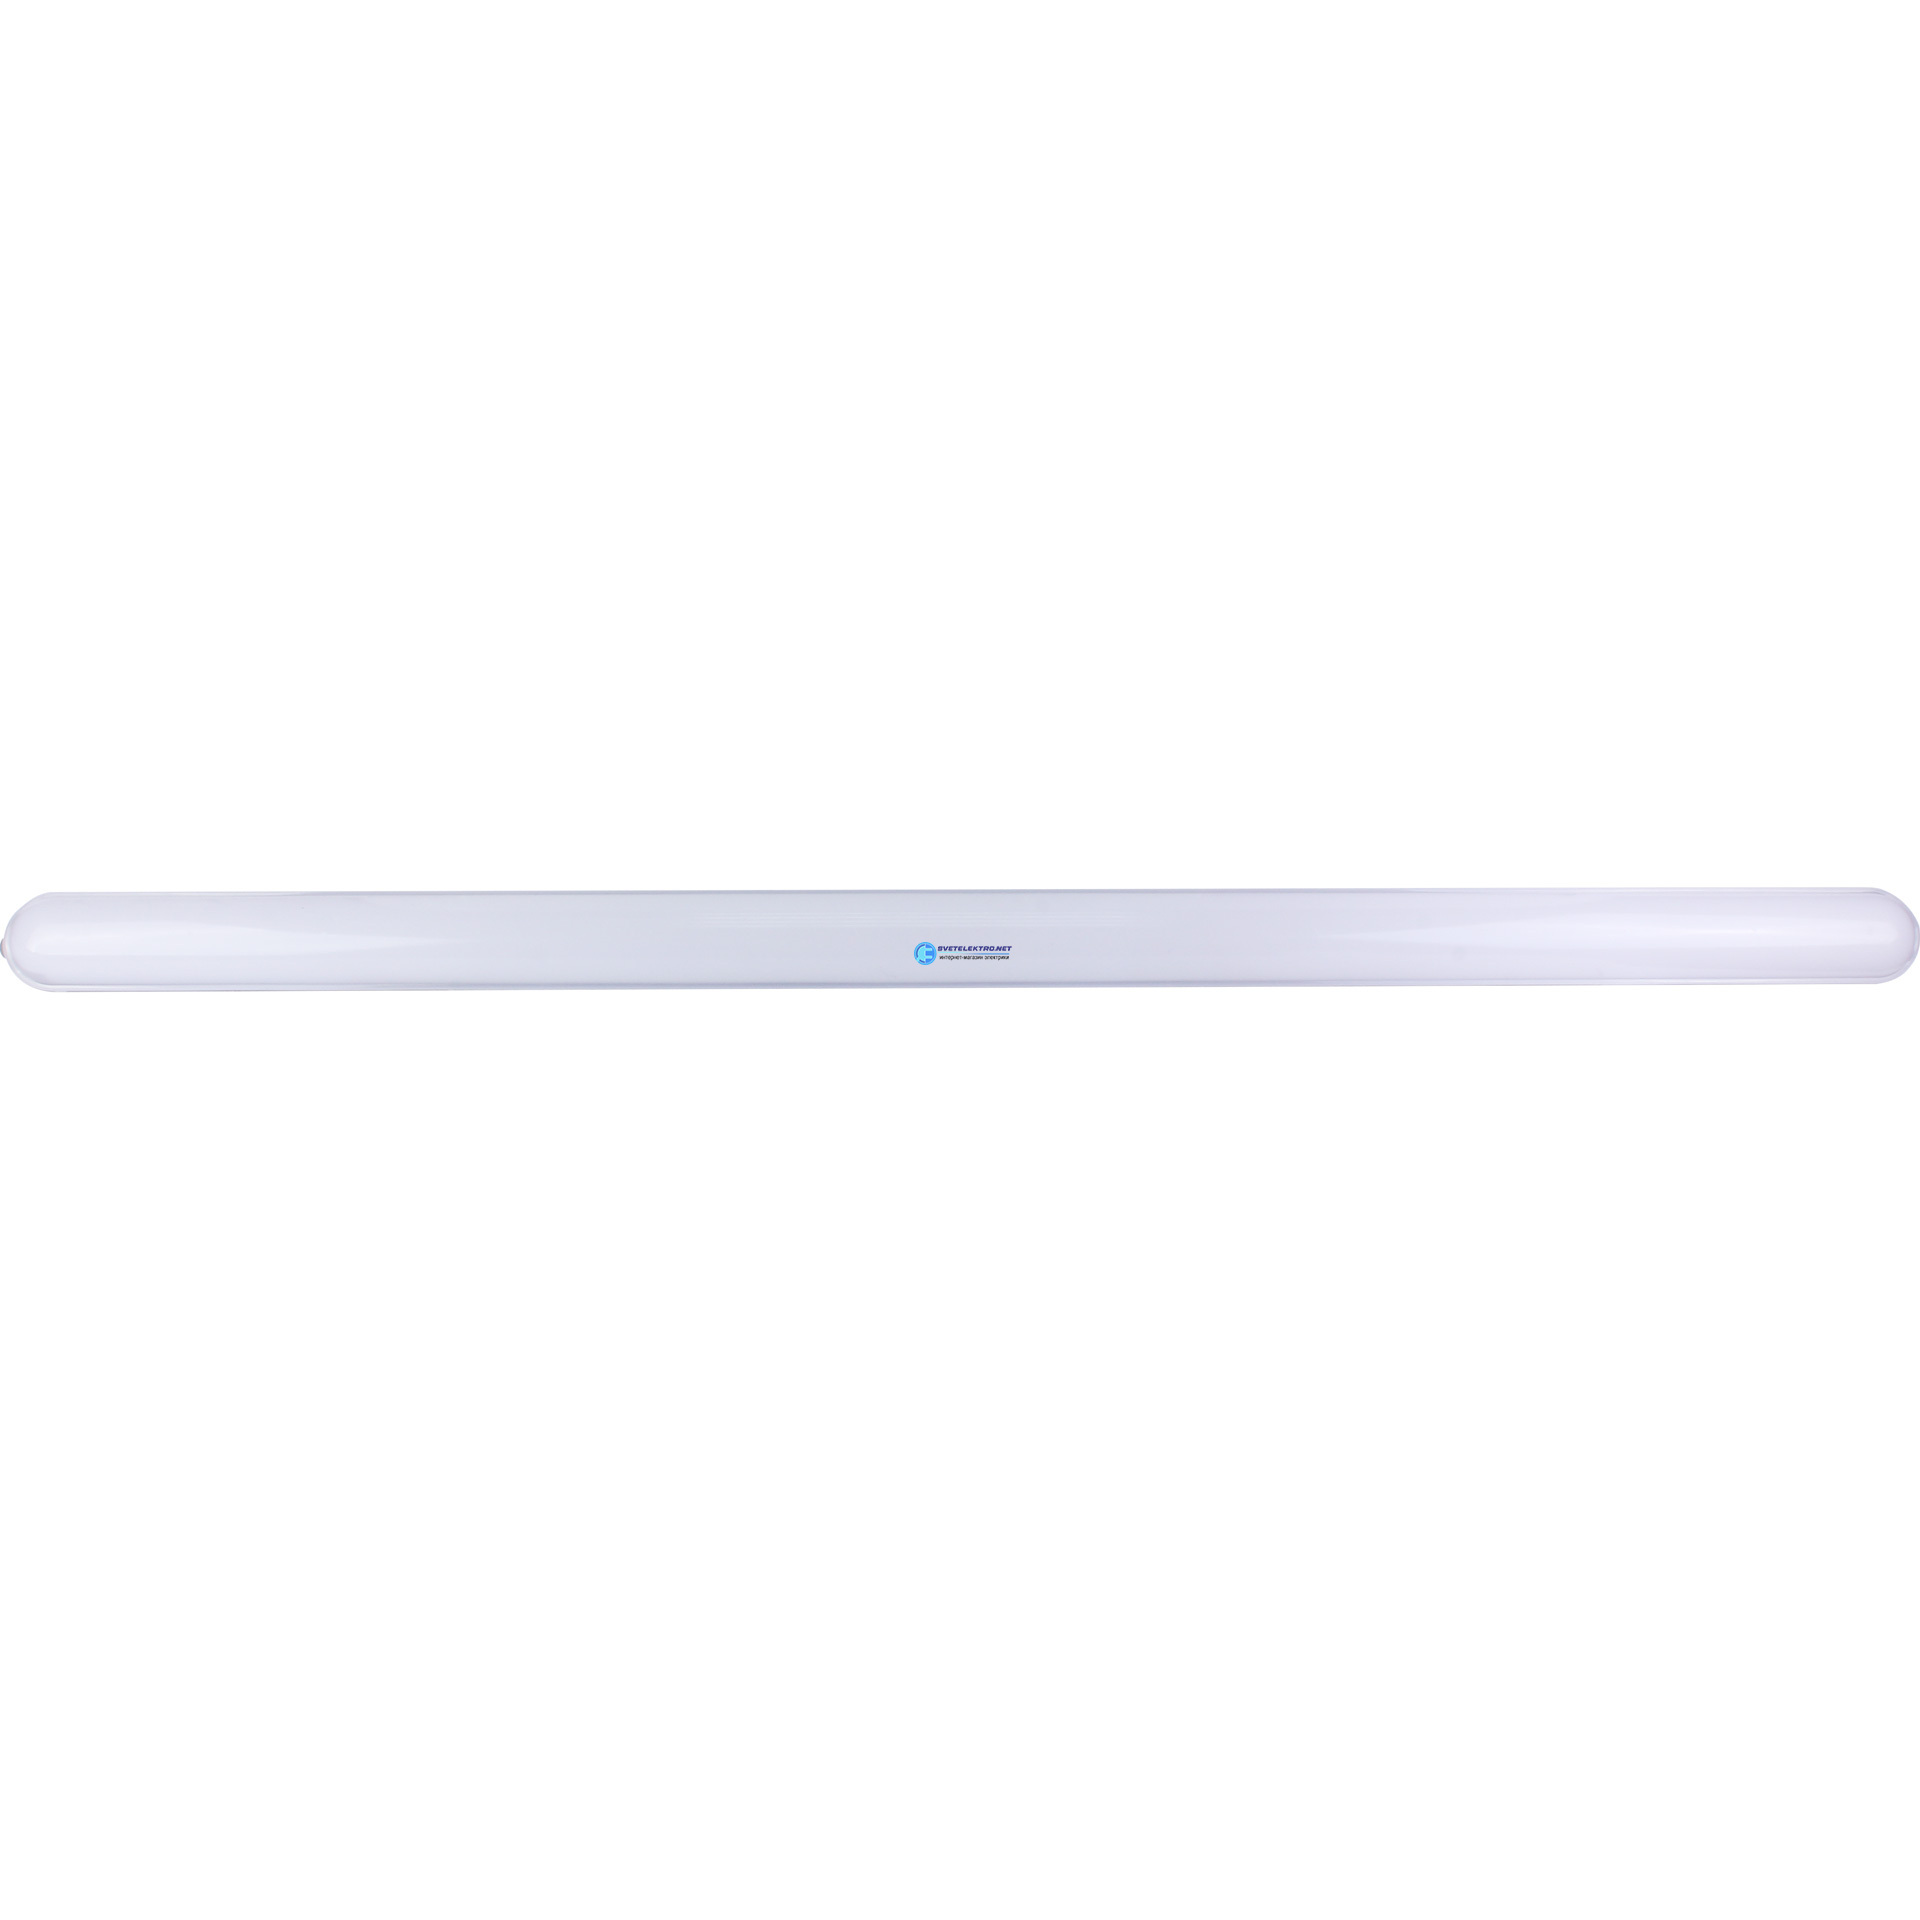 Светодиодная лампа 1500мм. SPP 201-0-40k-048 светильник. Wacom ACK-20401 белый.